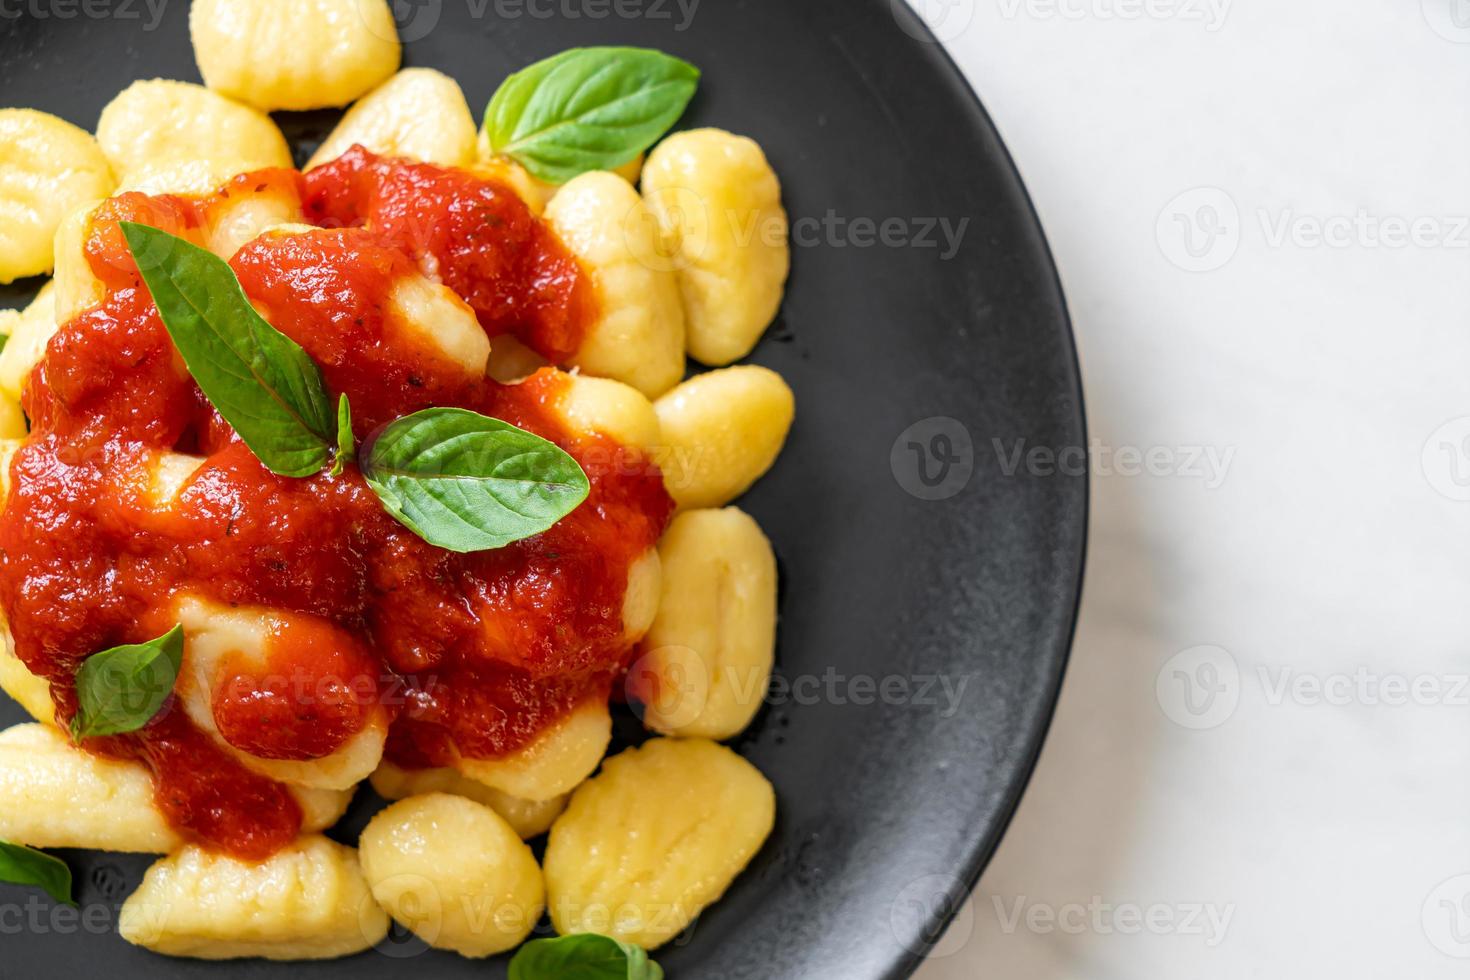 gnocchi i tomatsås med ost - italiensk matstil foto